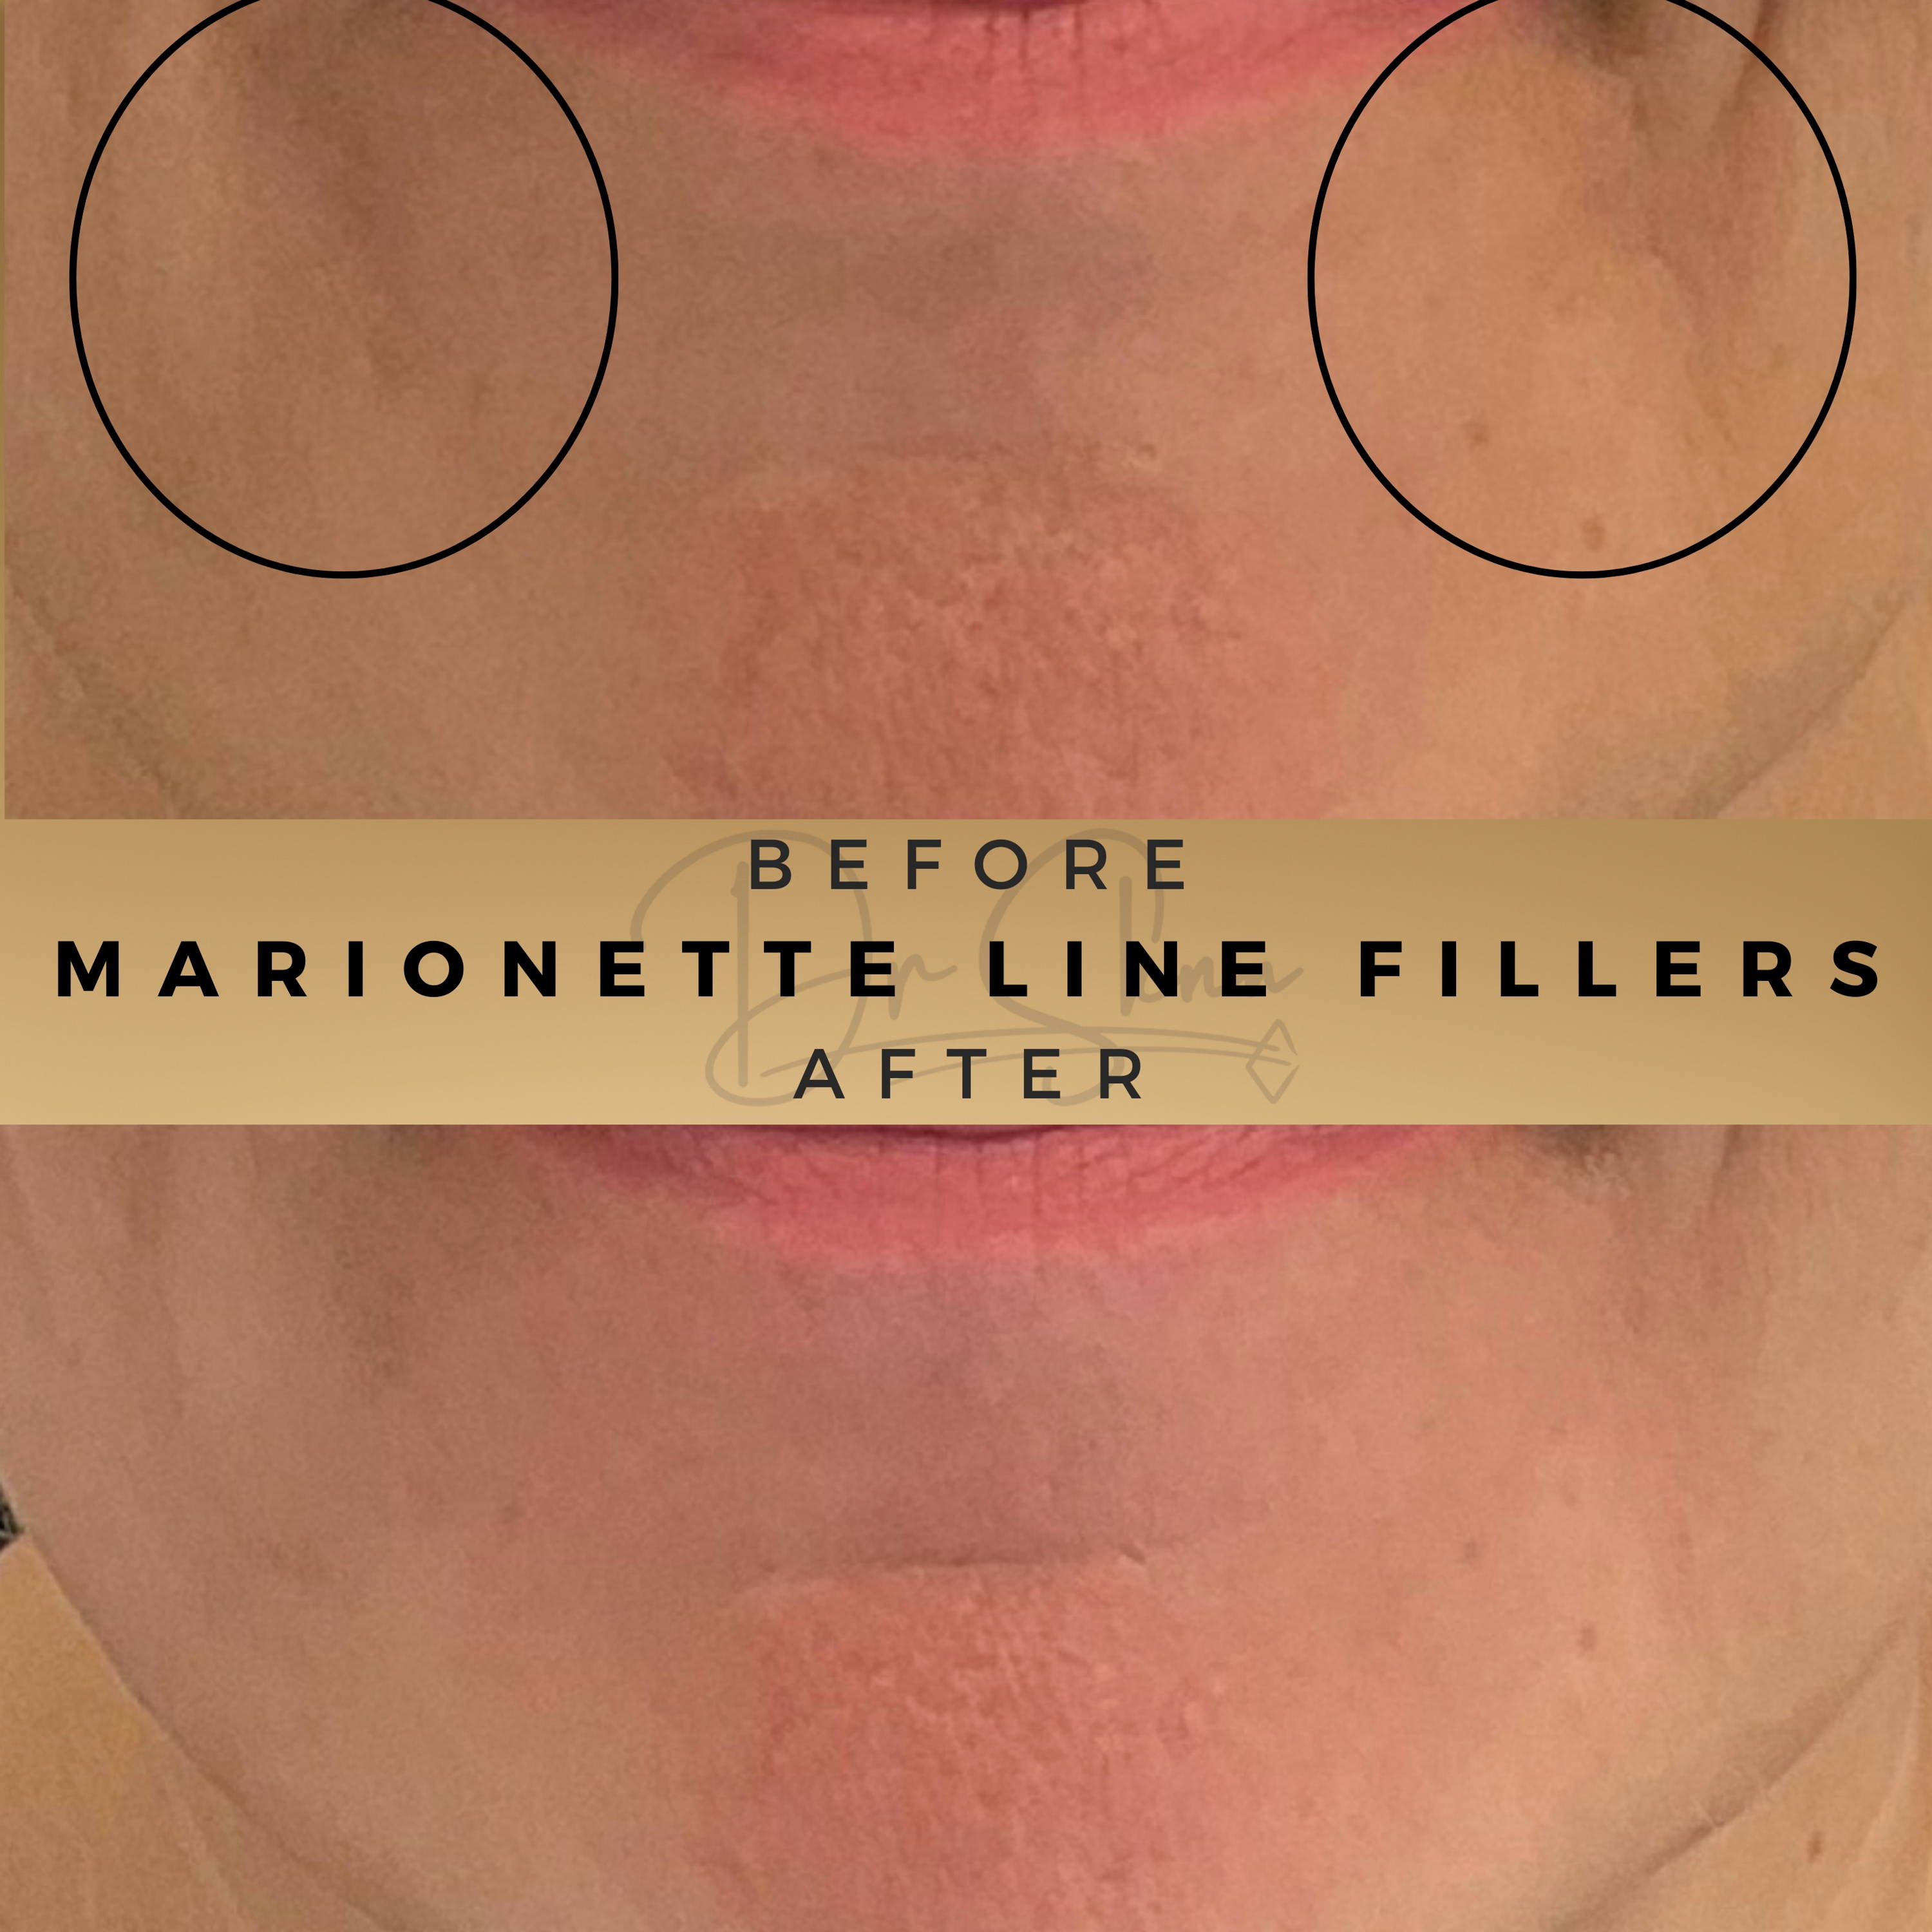 Marionette Line Fillers Wilmslow Before & After Dr Sknn